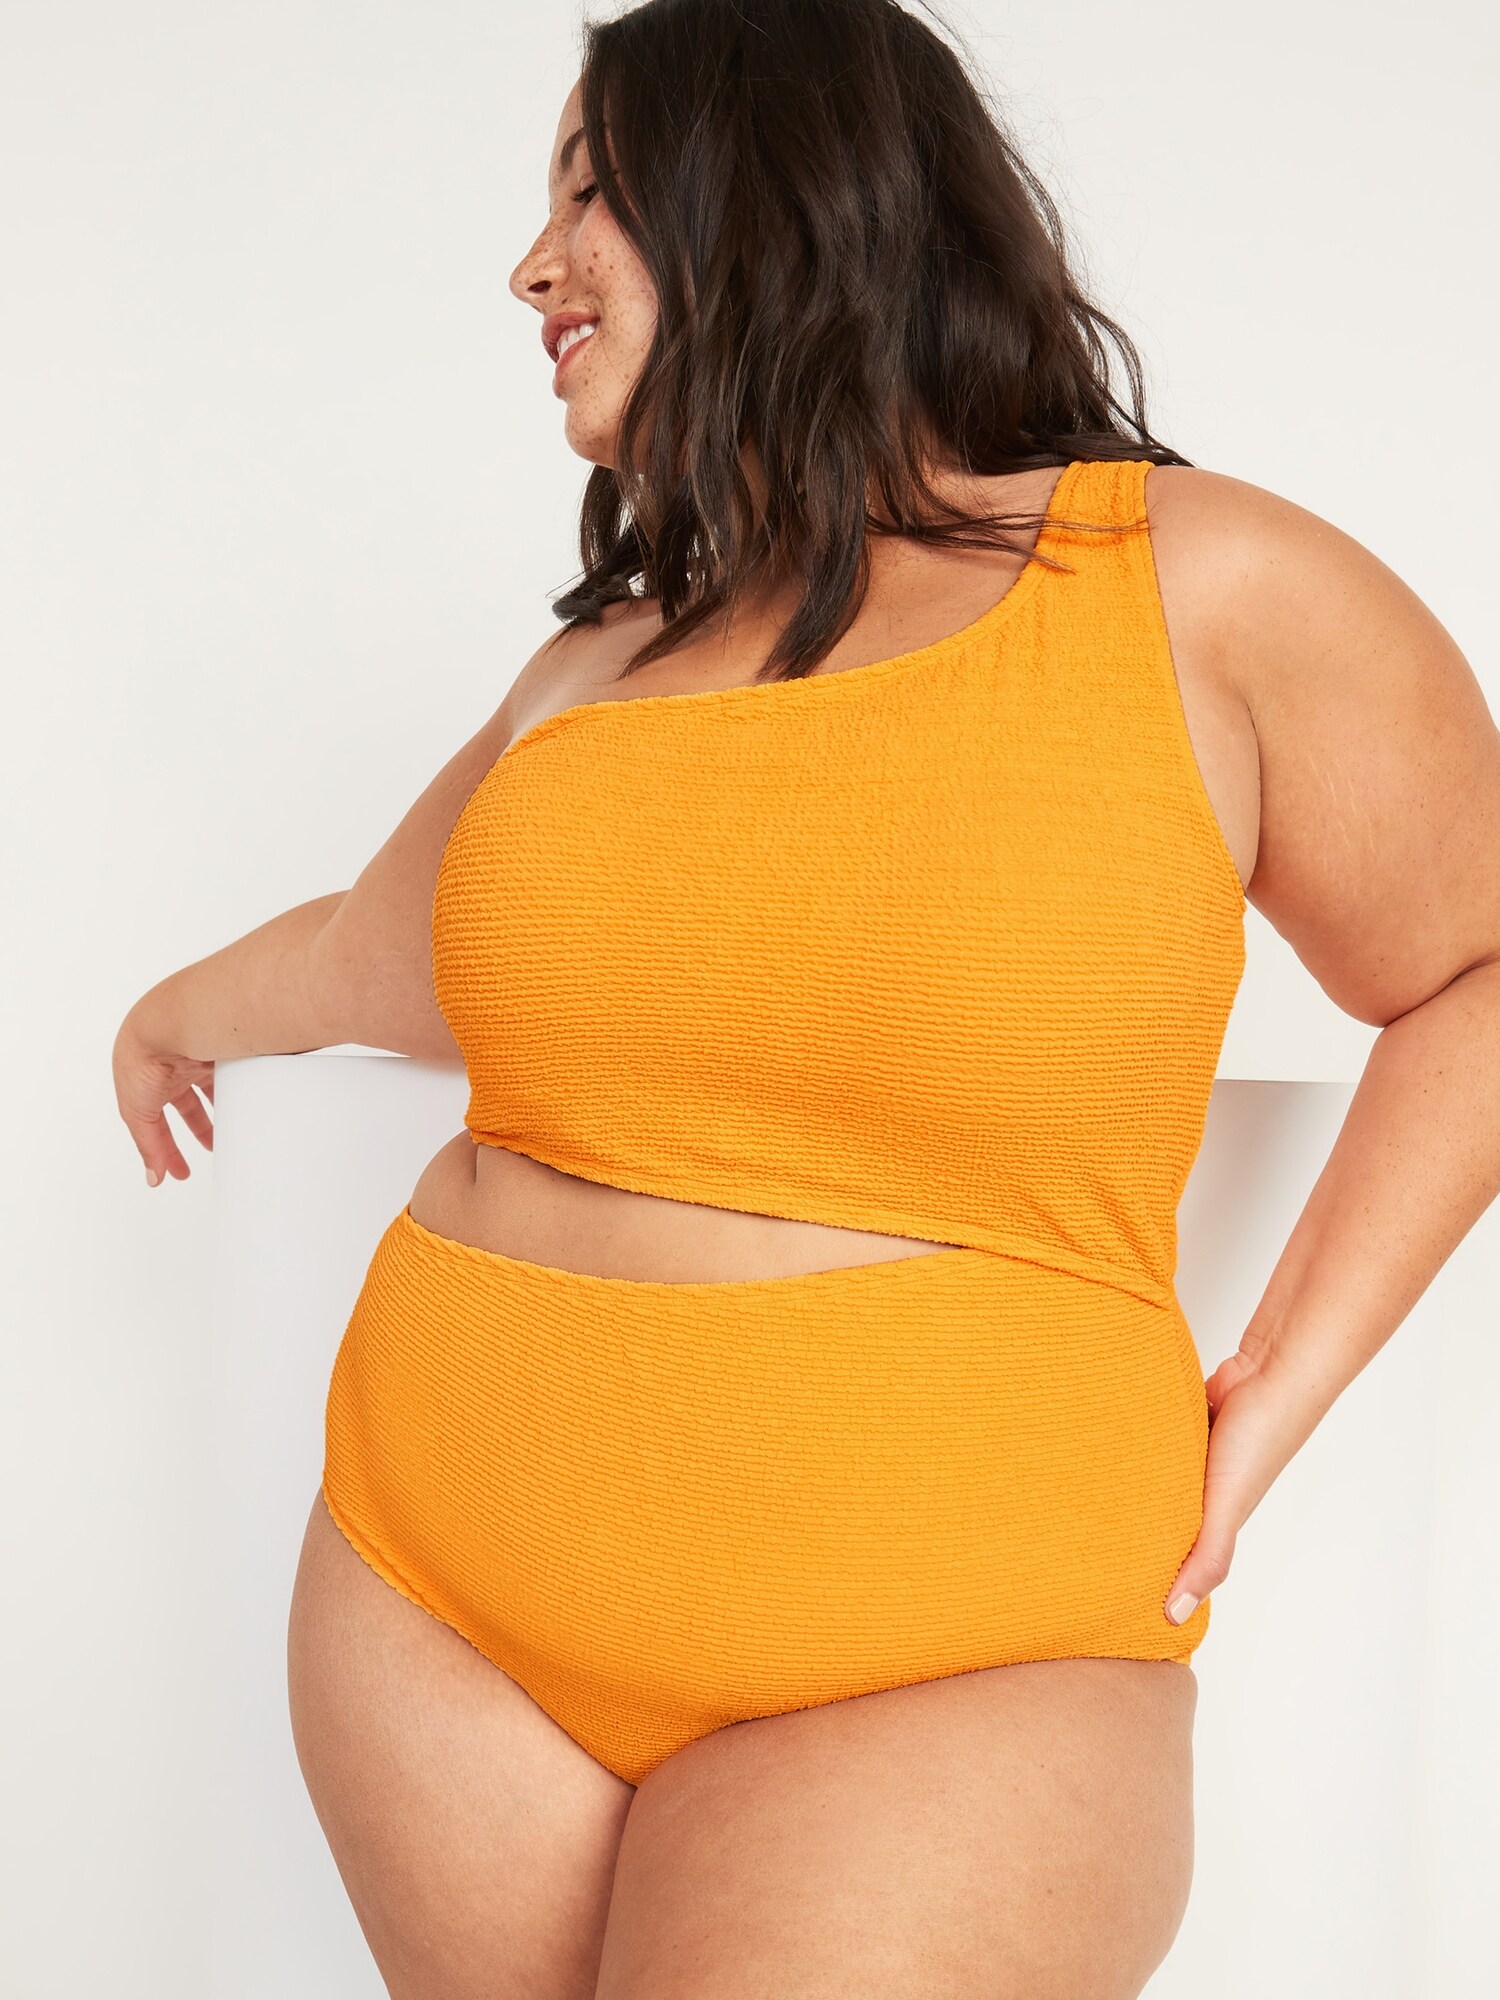 Women's Cutout Plus-Size Swimsuits